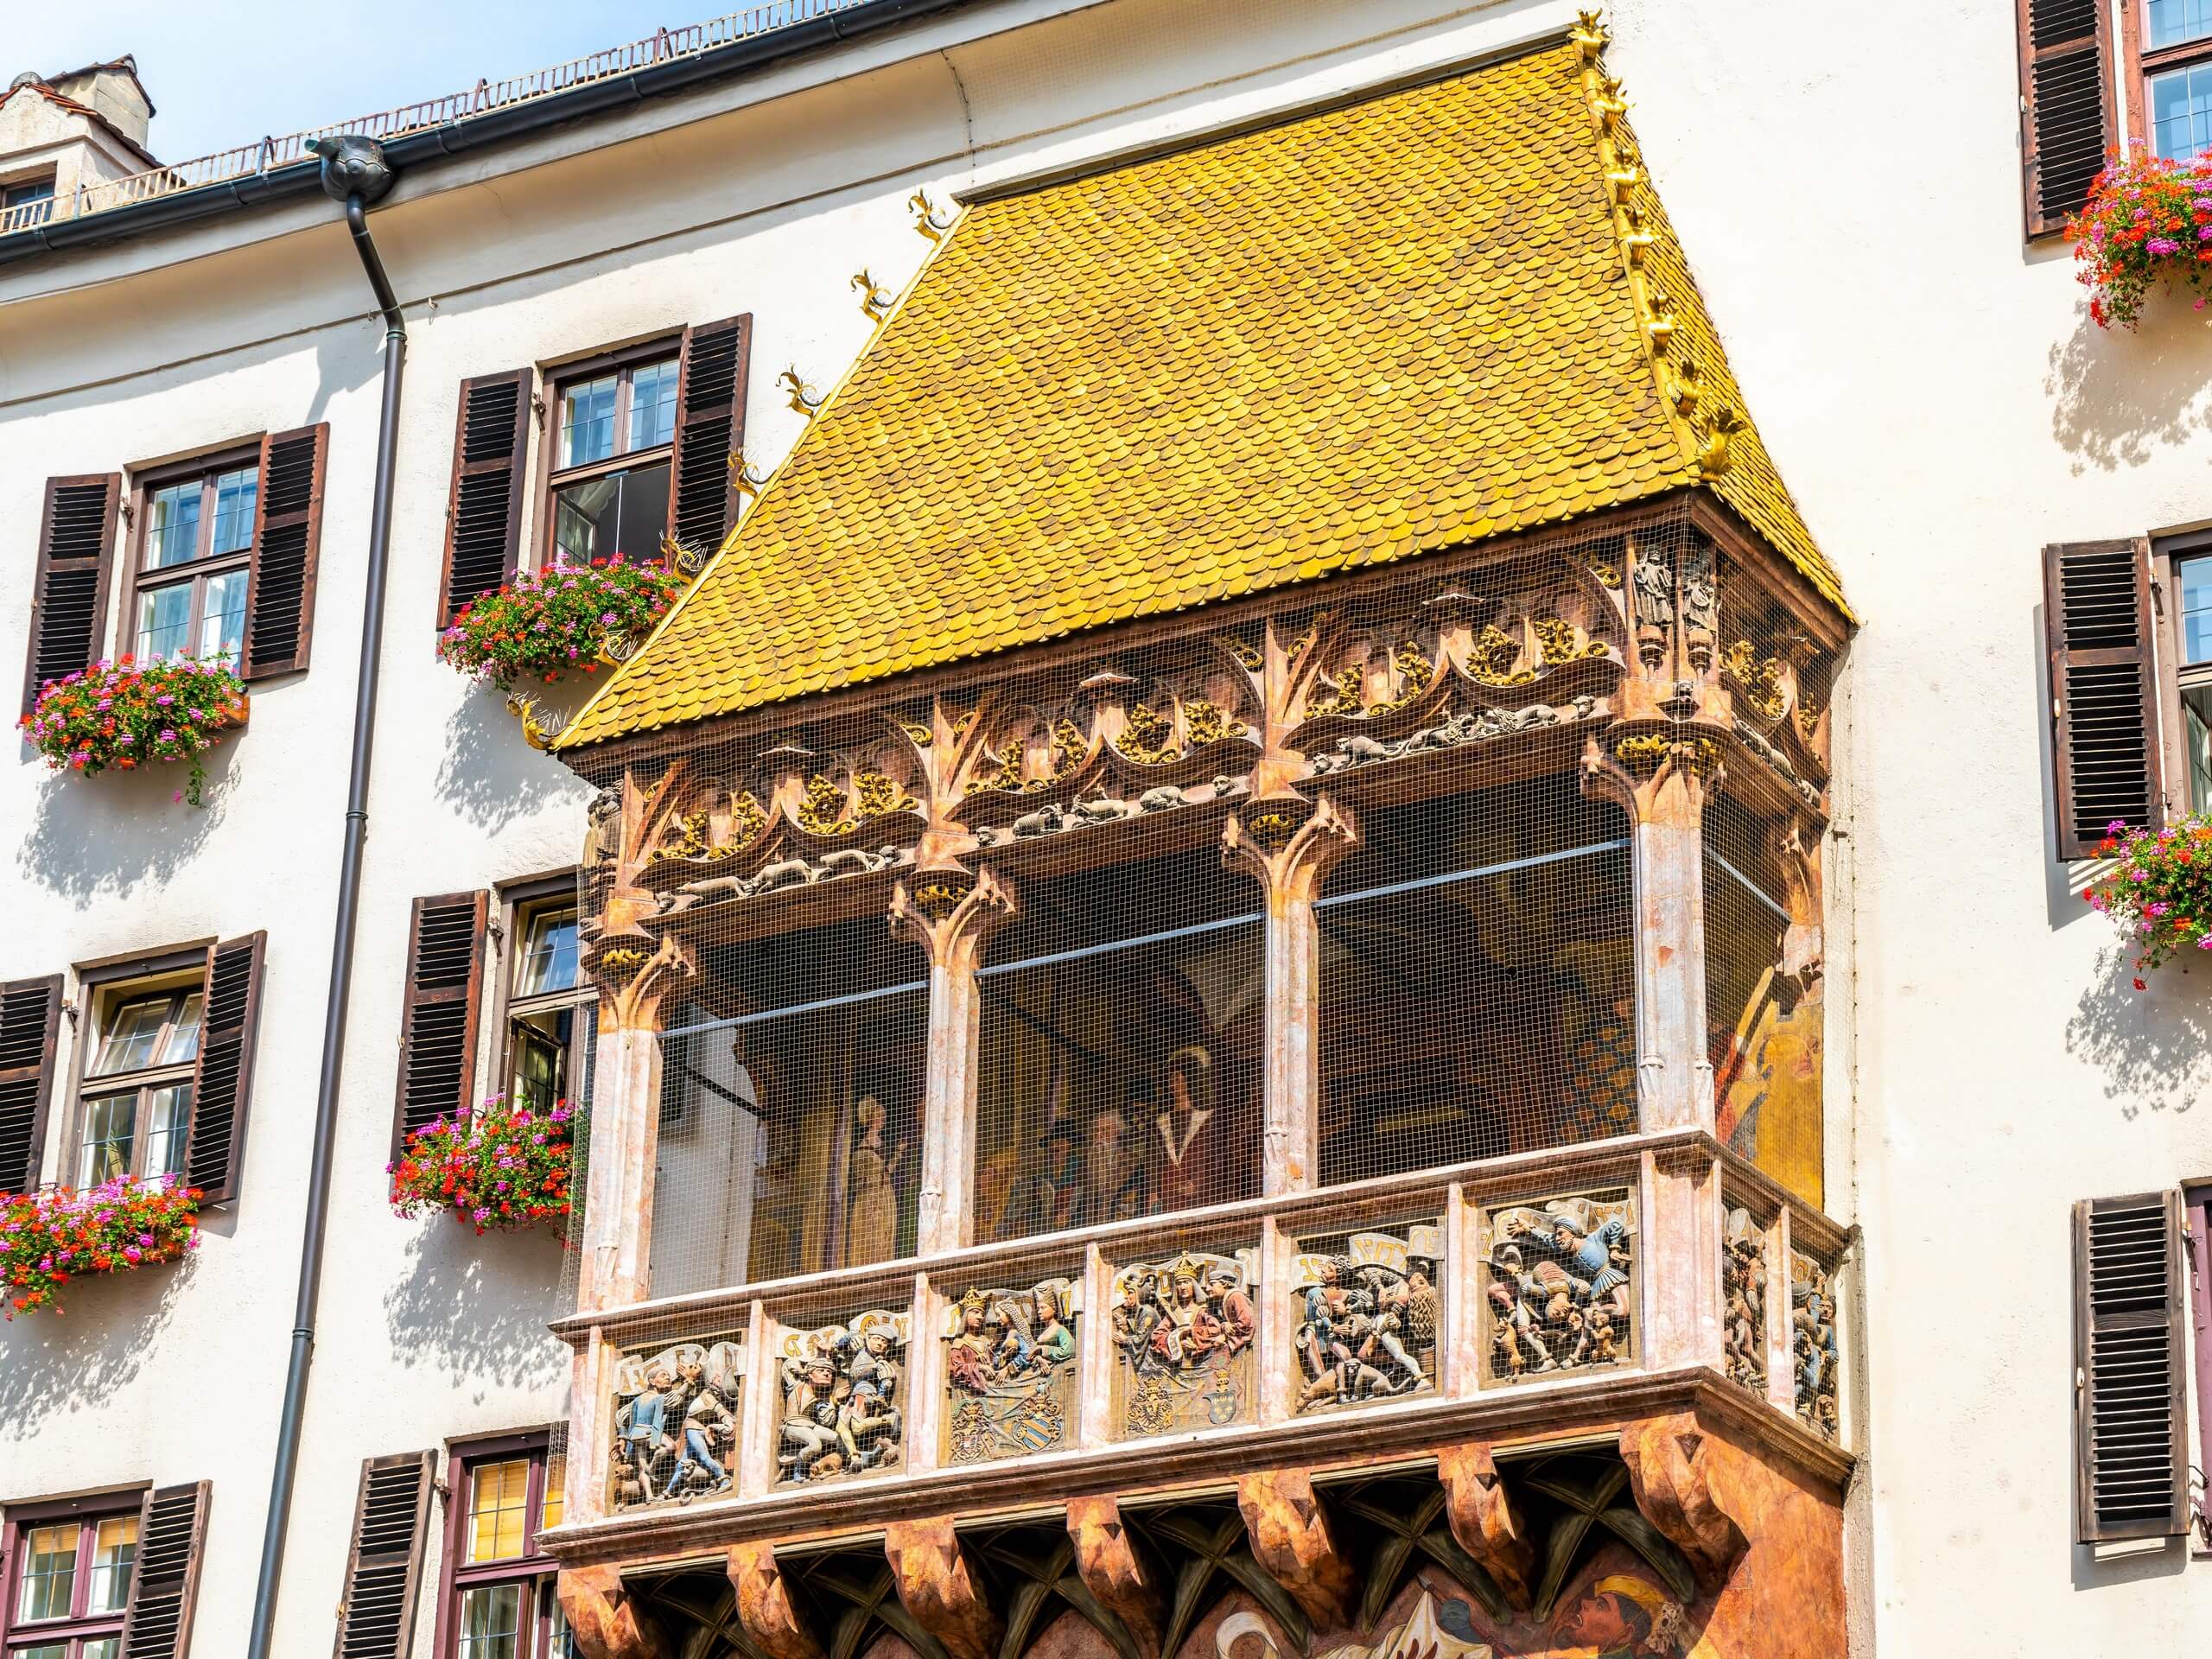 Innsbruck - Goldenes dachl